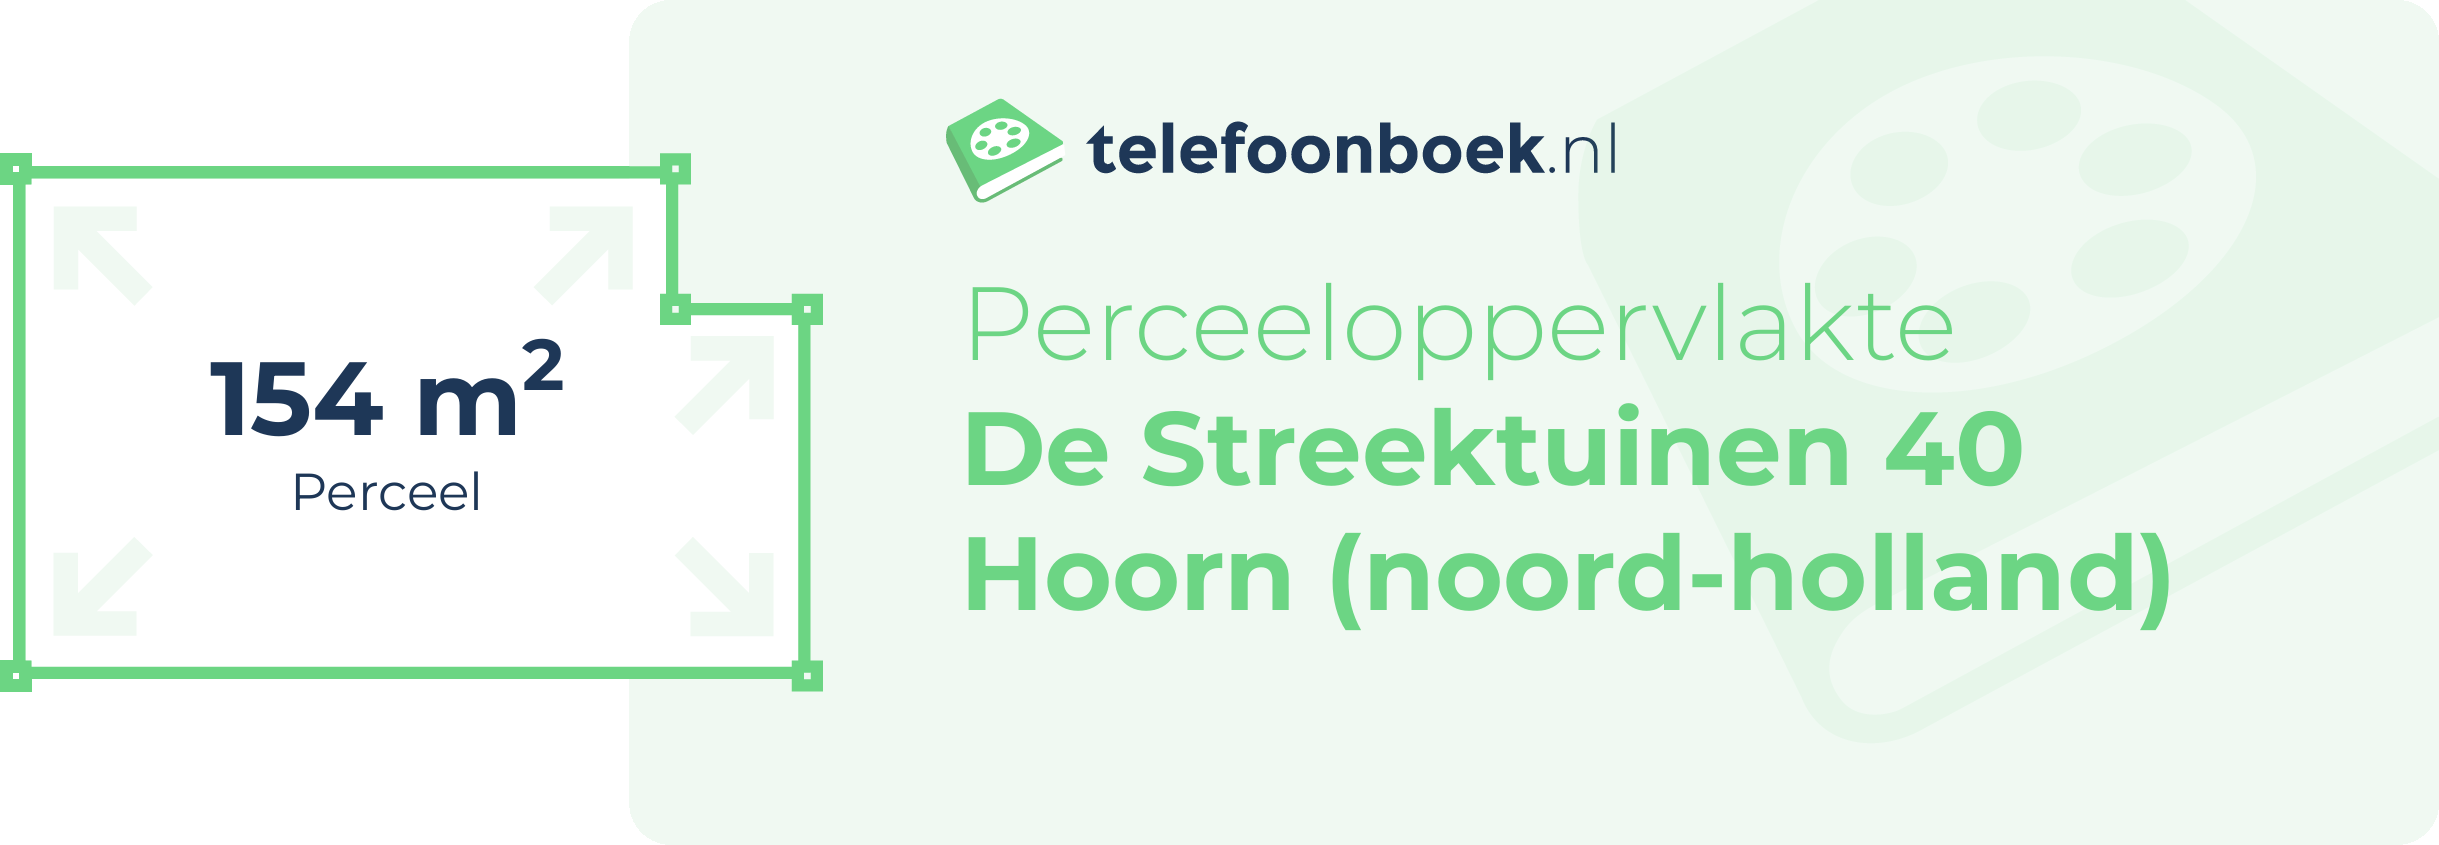 Perceeloppervlakte De Streektuinen 40 Hoorn (Noord-Holland)